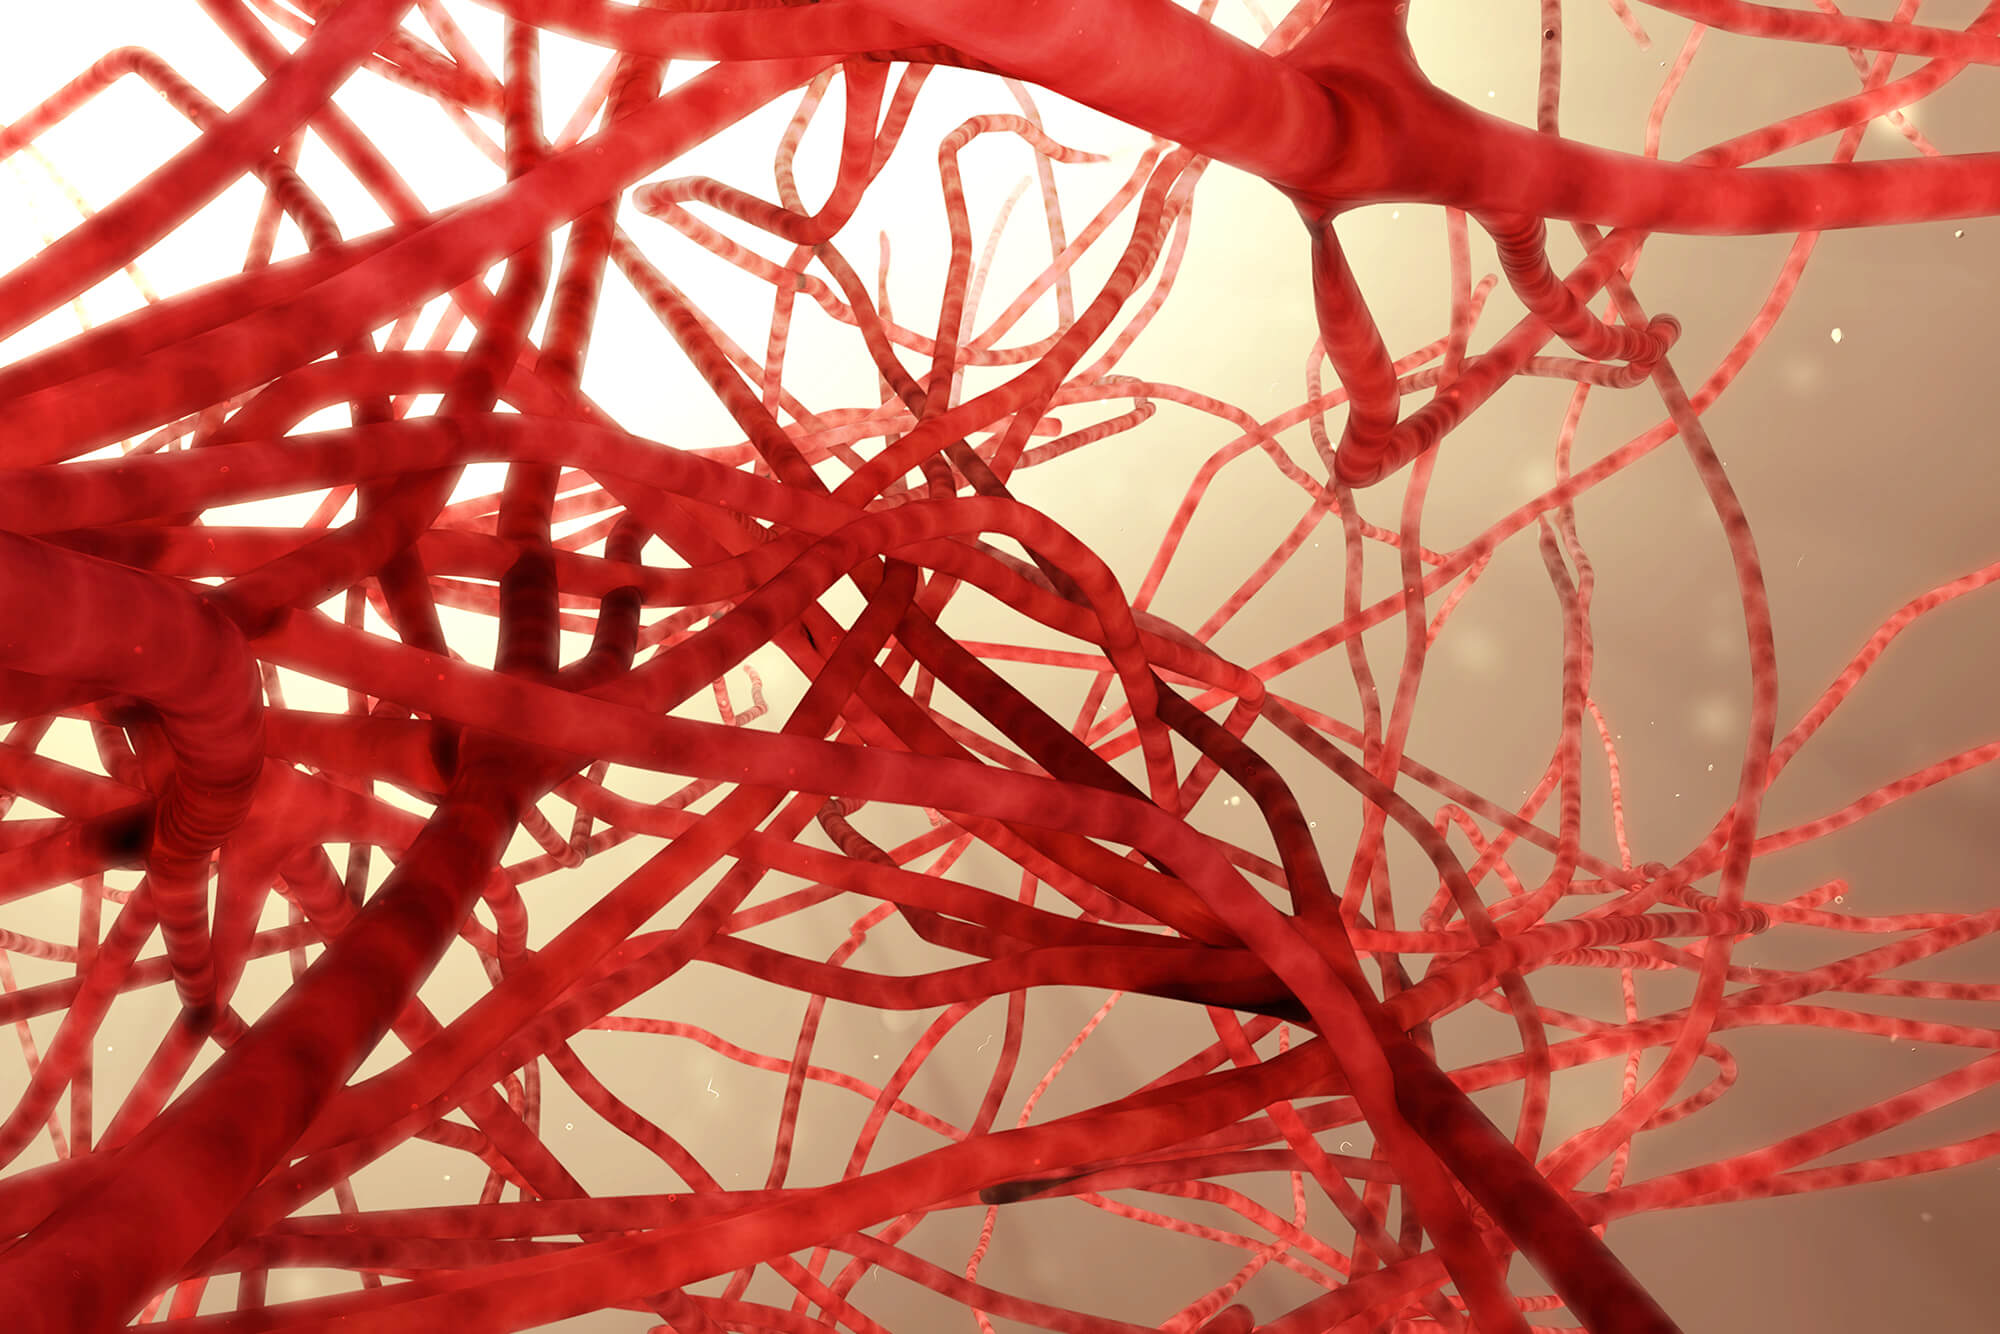 Blood vessels, 3D illustration